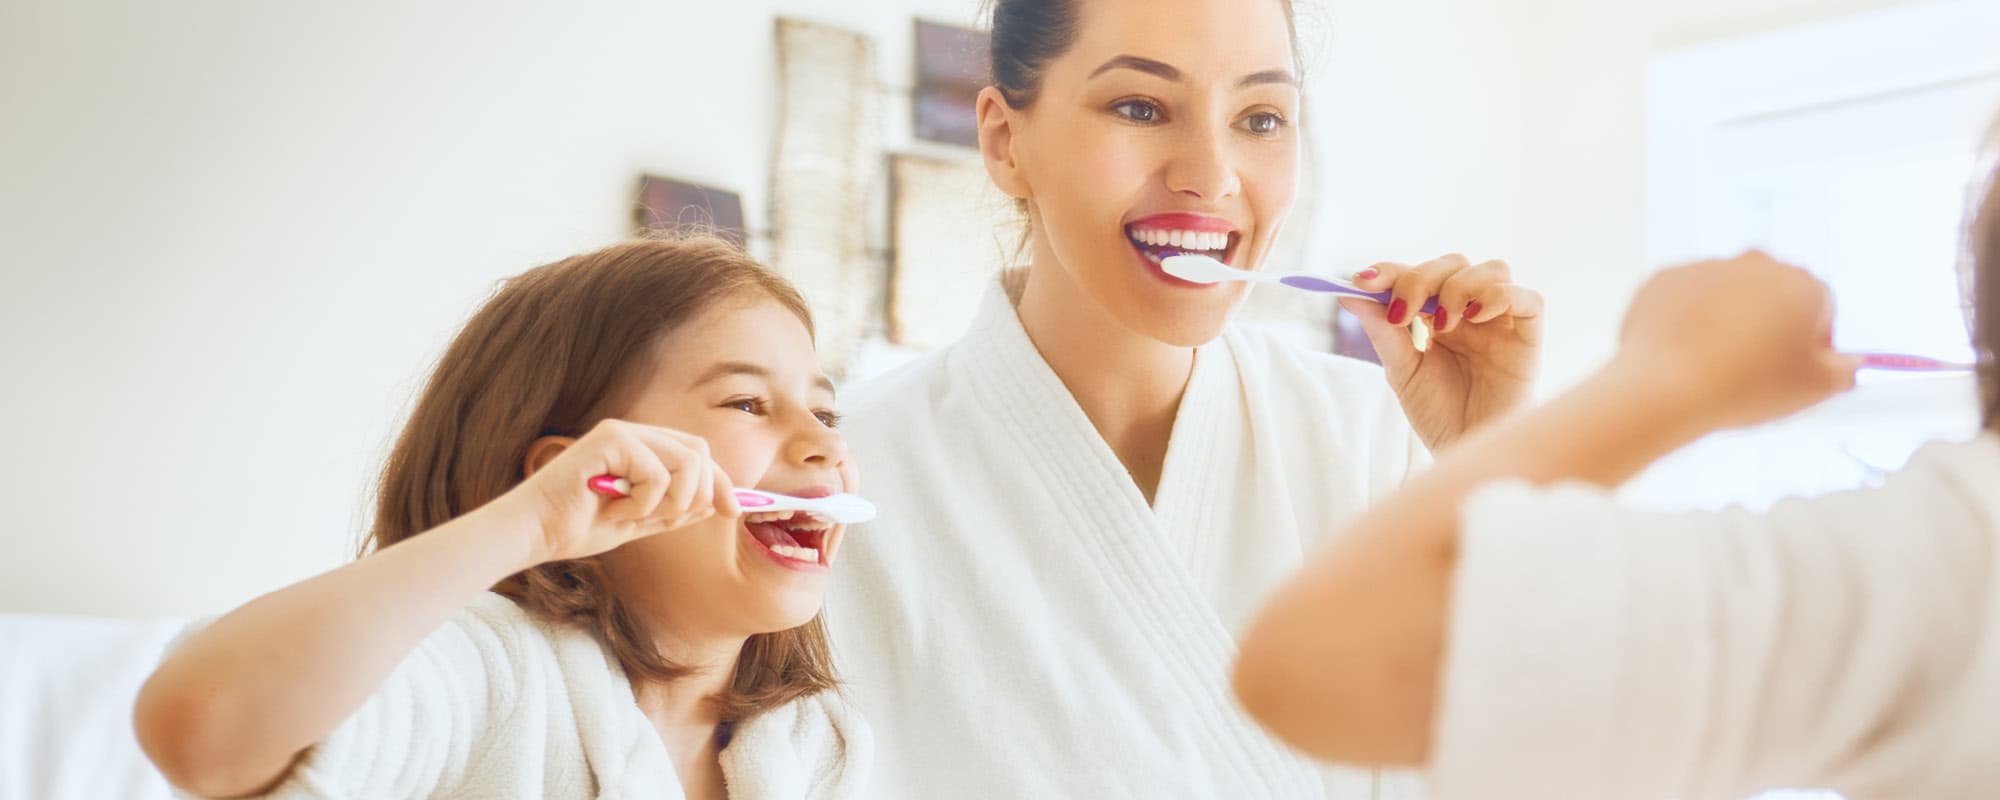 Quanto ne sai sui denti e sull’igiene orale? Ecco 15 curiosità di cui probabilmente non sei al corrente!